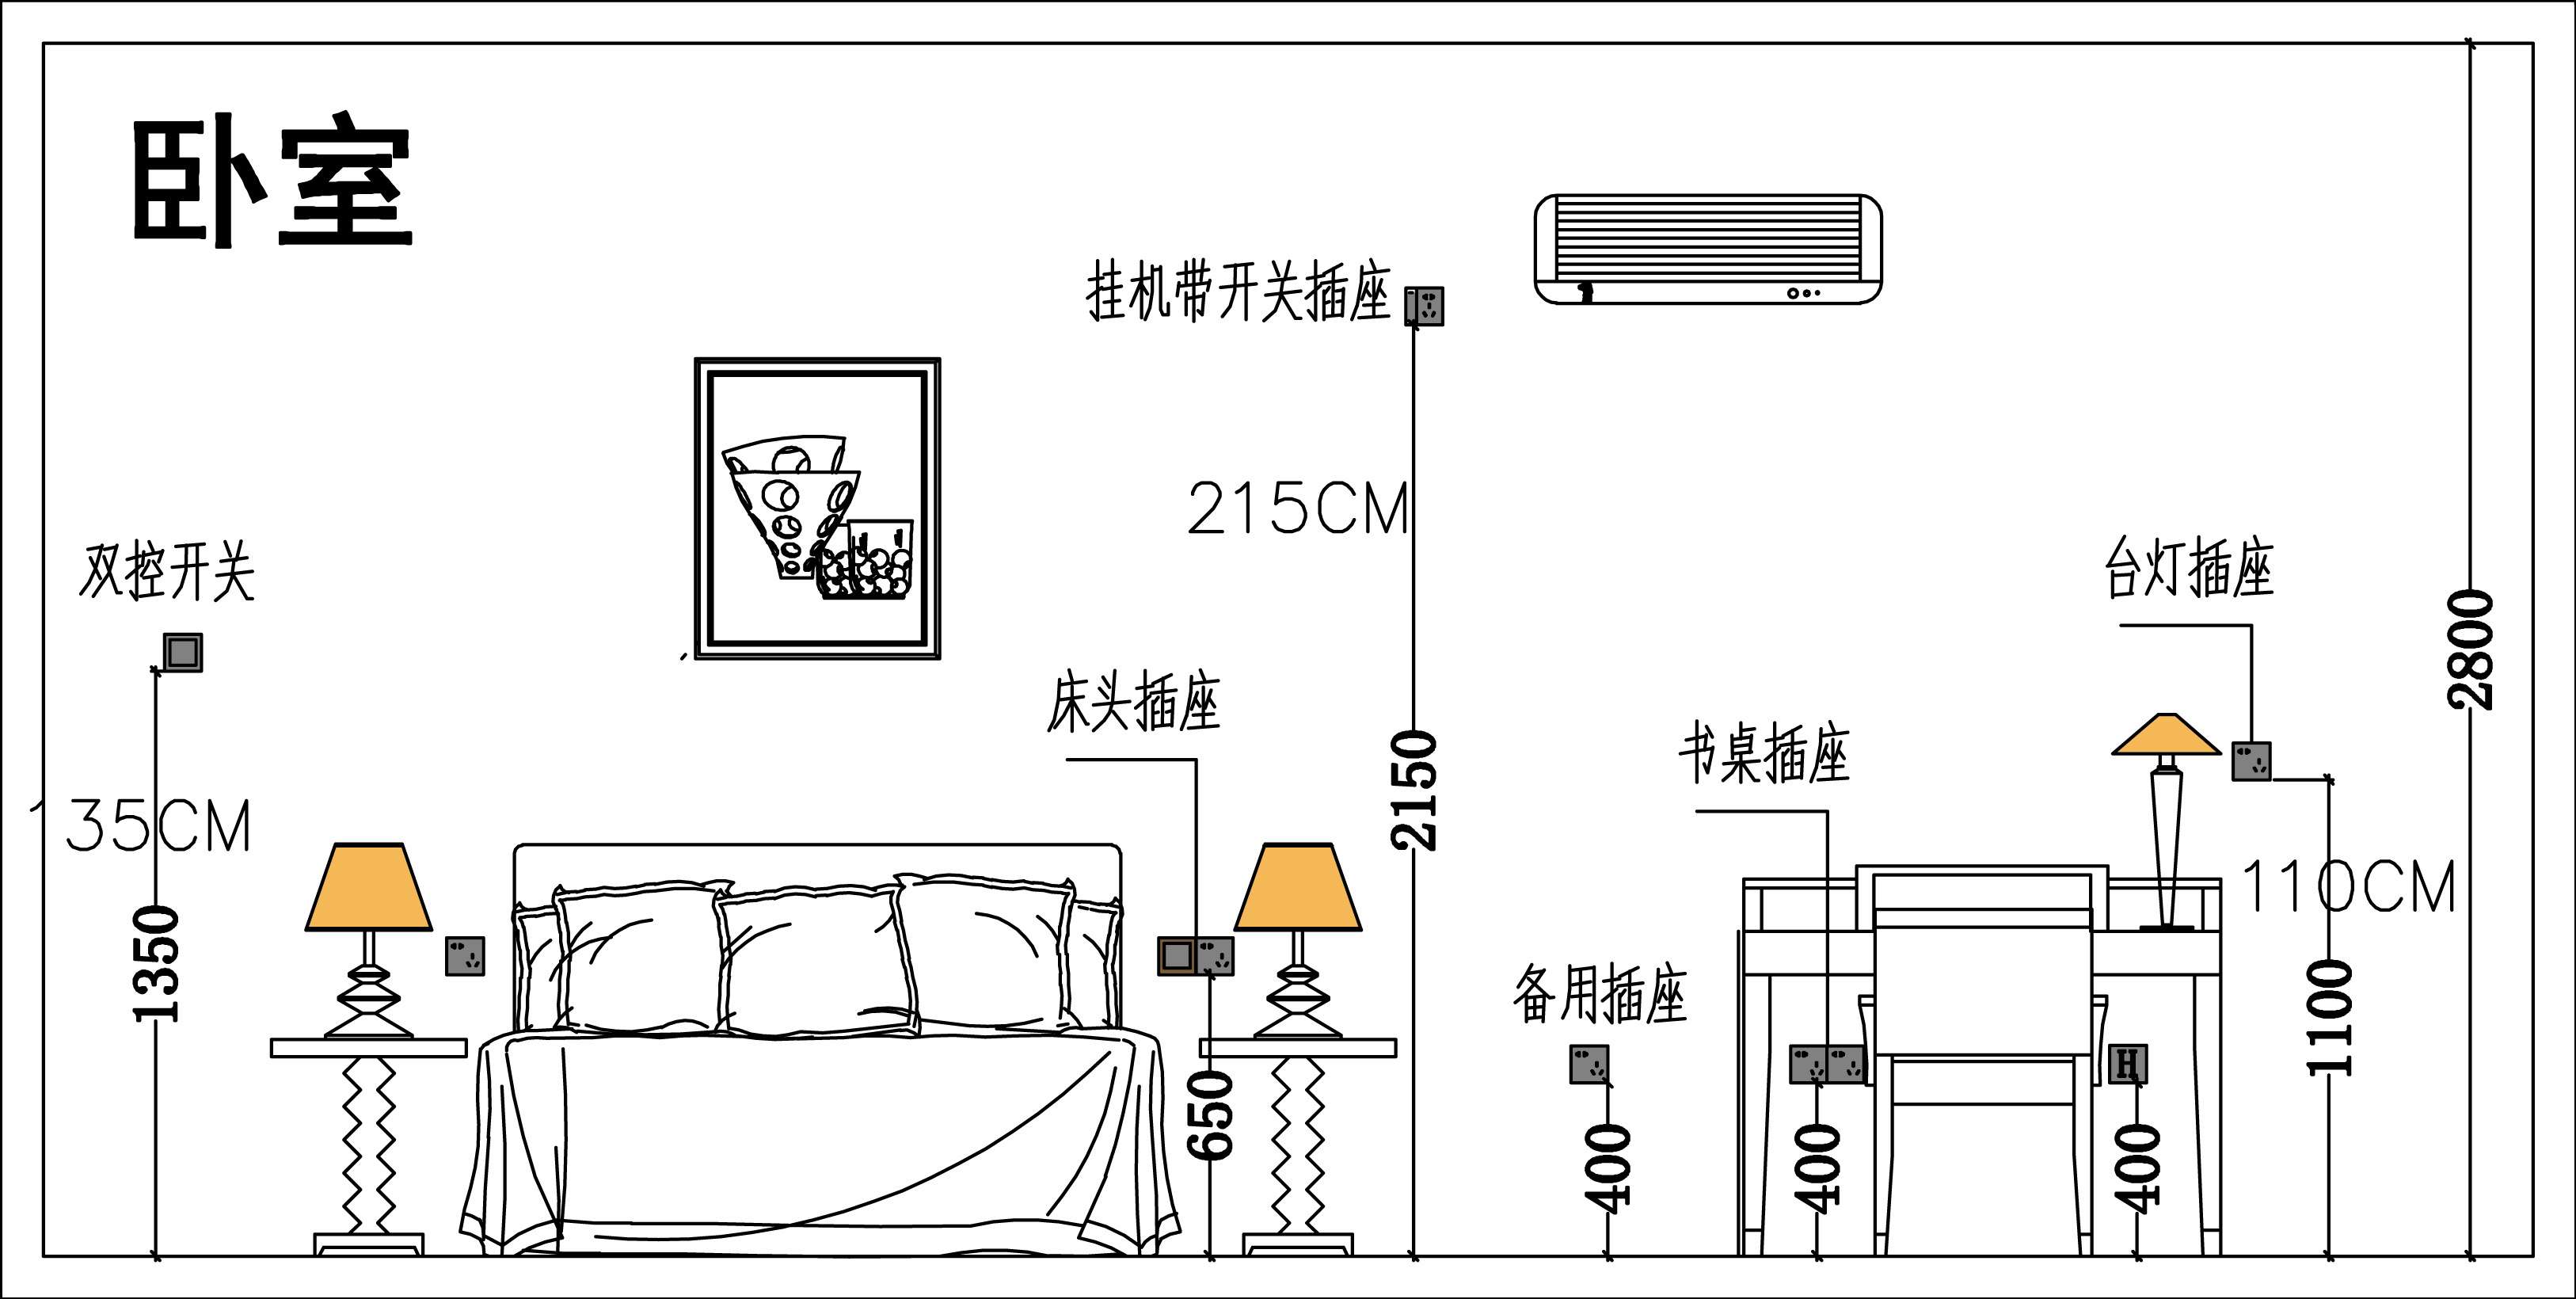 桂林设计师李游 的想法: 装修干货 全屋插座布置及高度图 